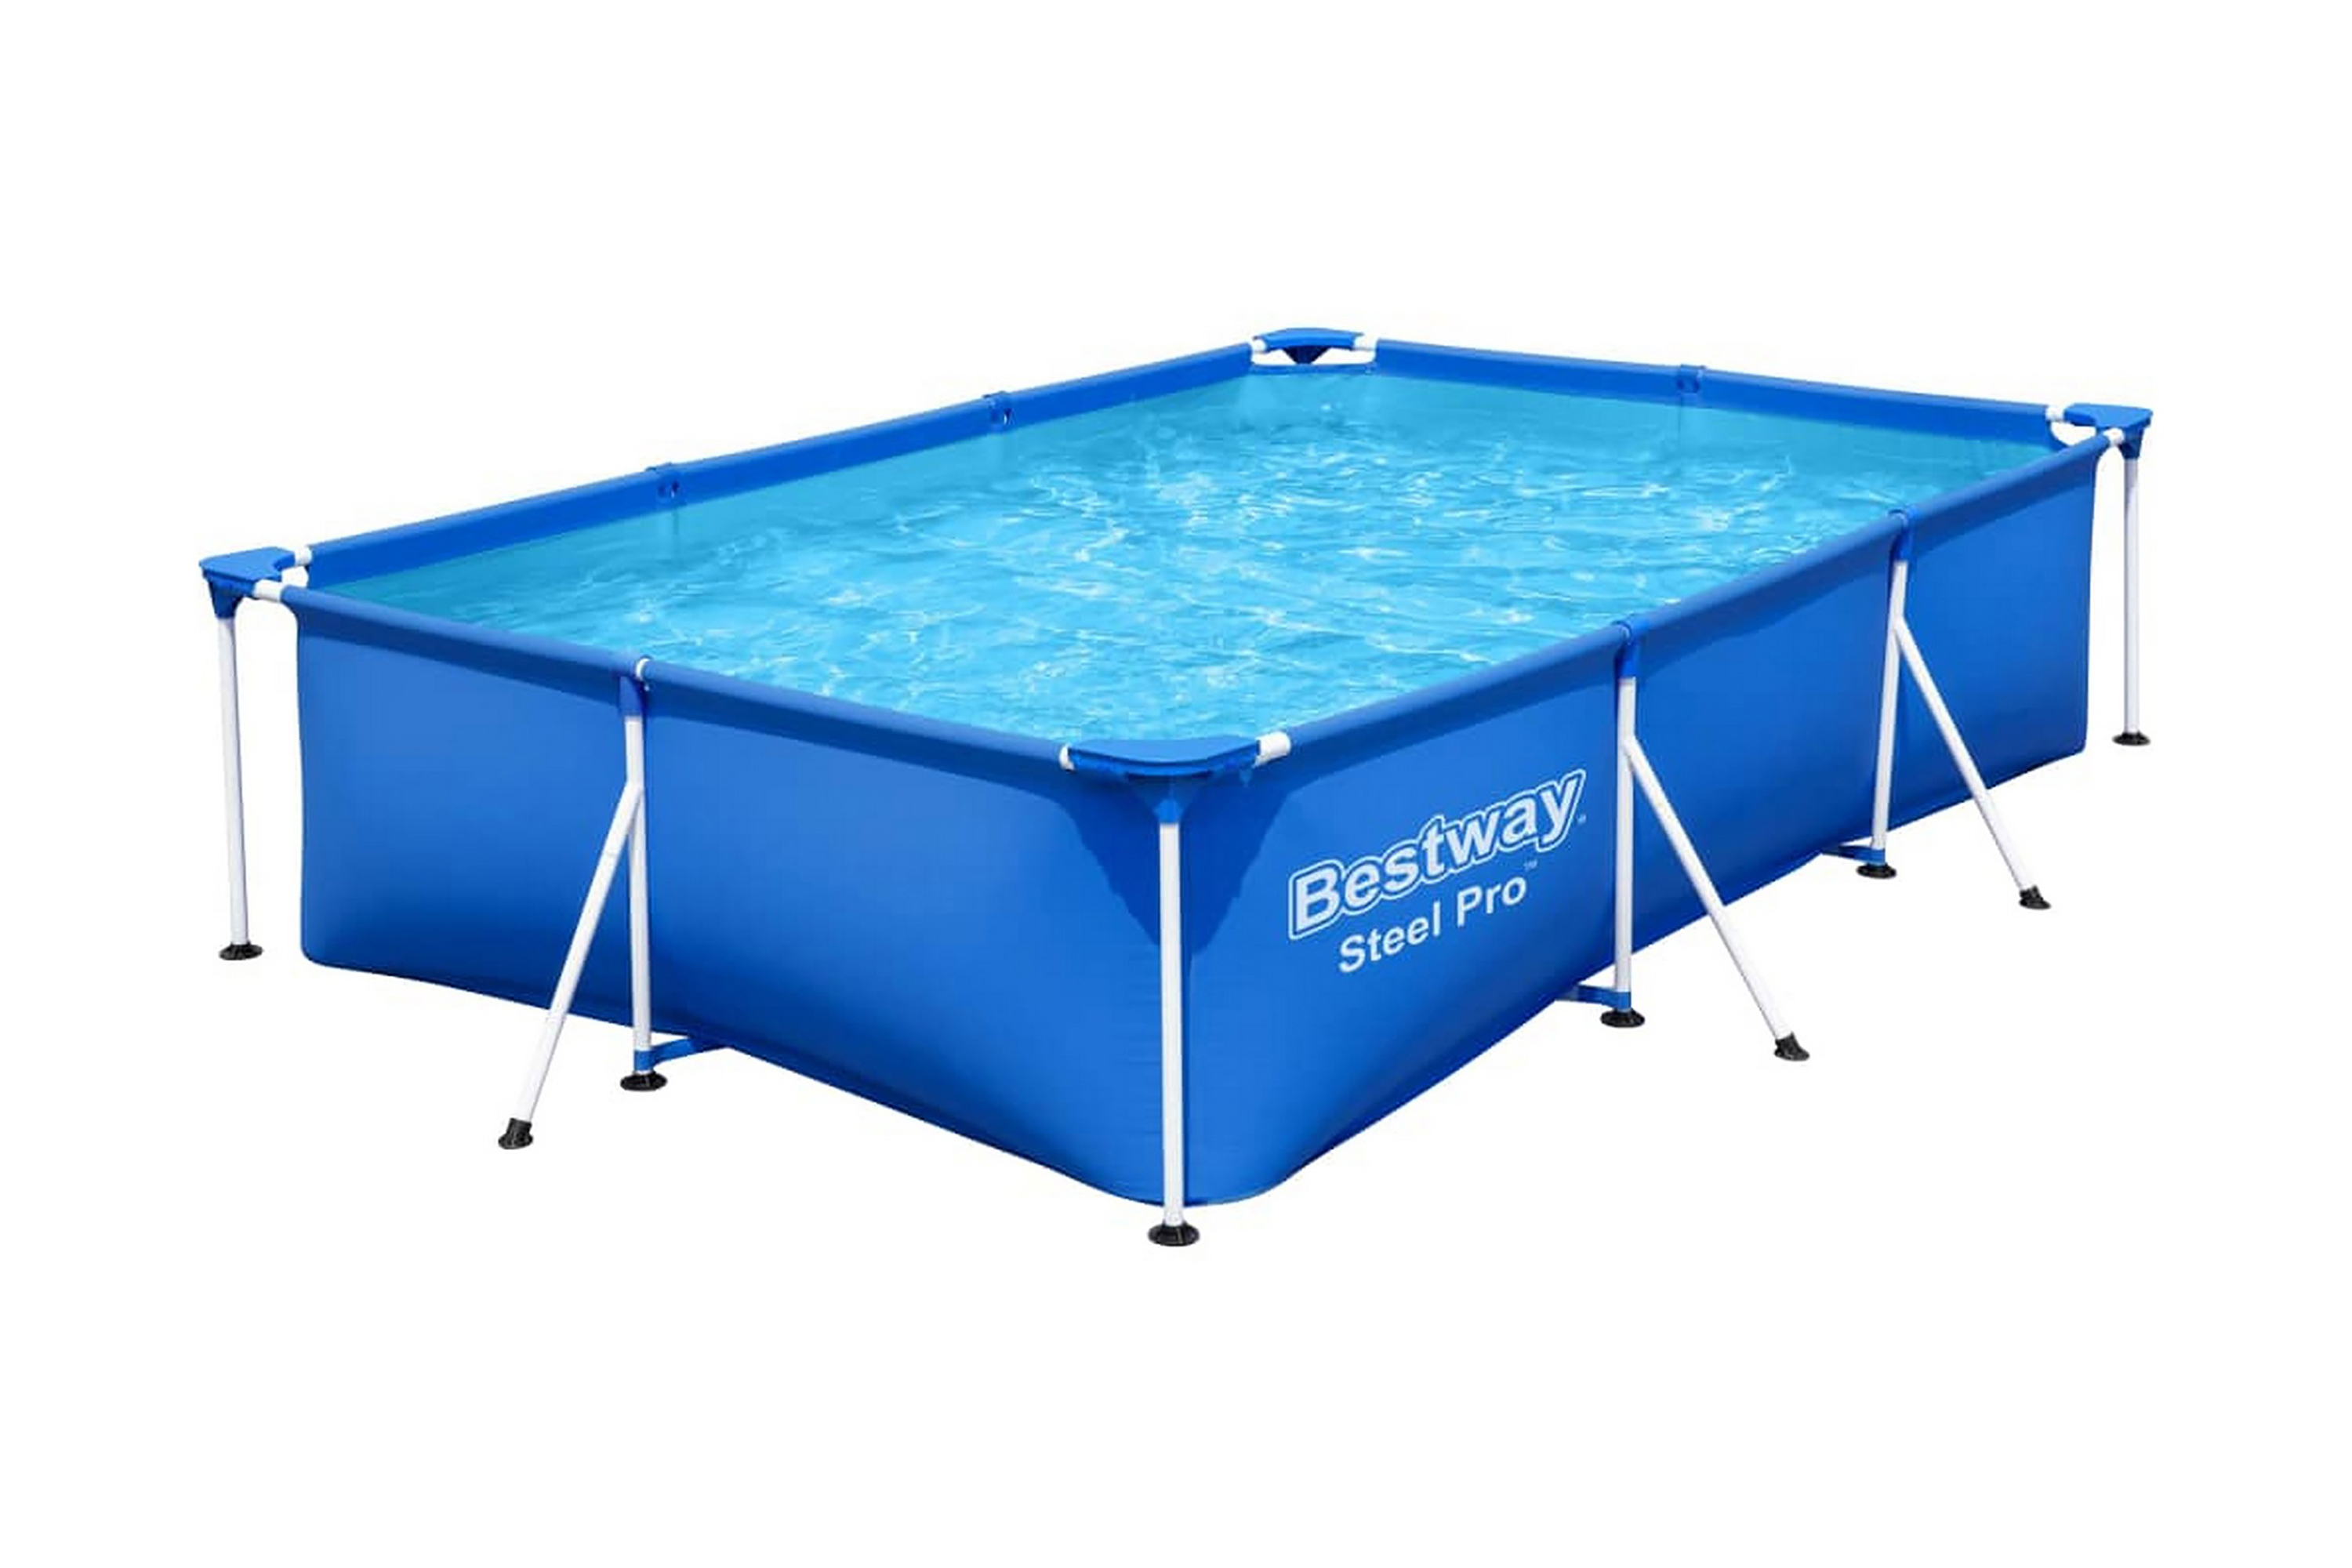 Bestway Pool Steel Pro 300x201x66 cm - 92812